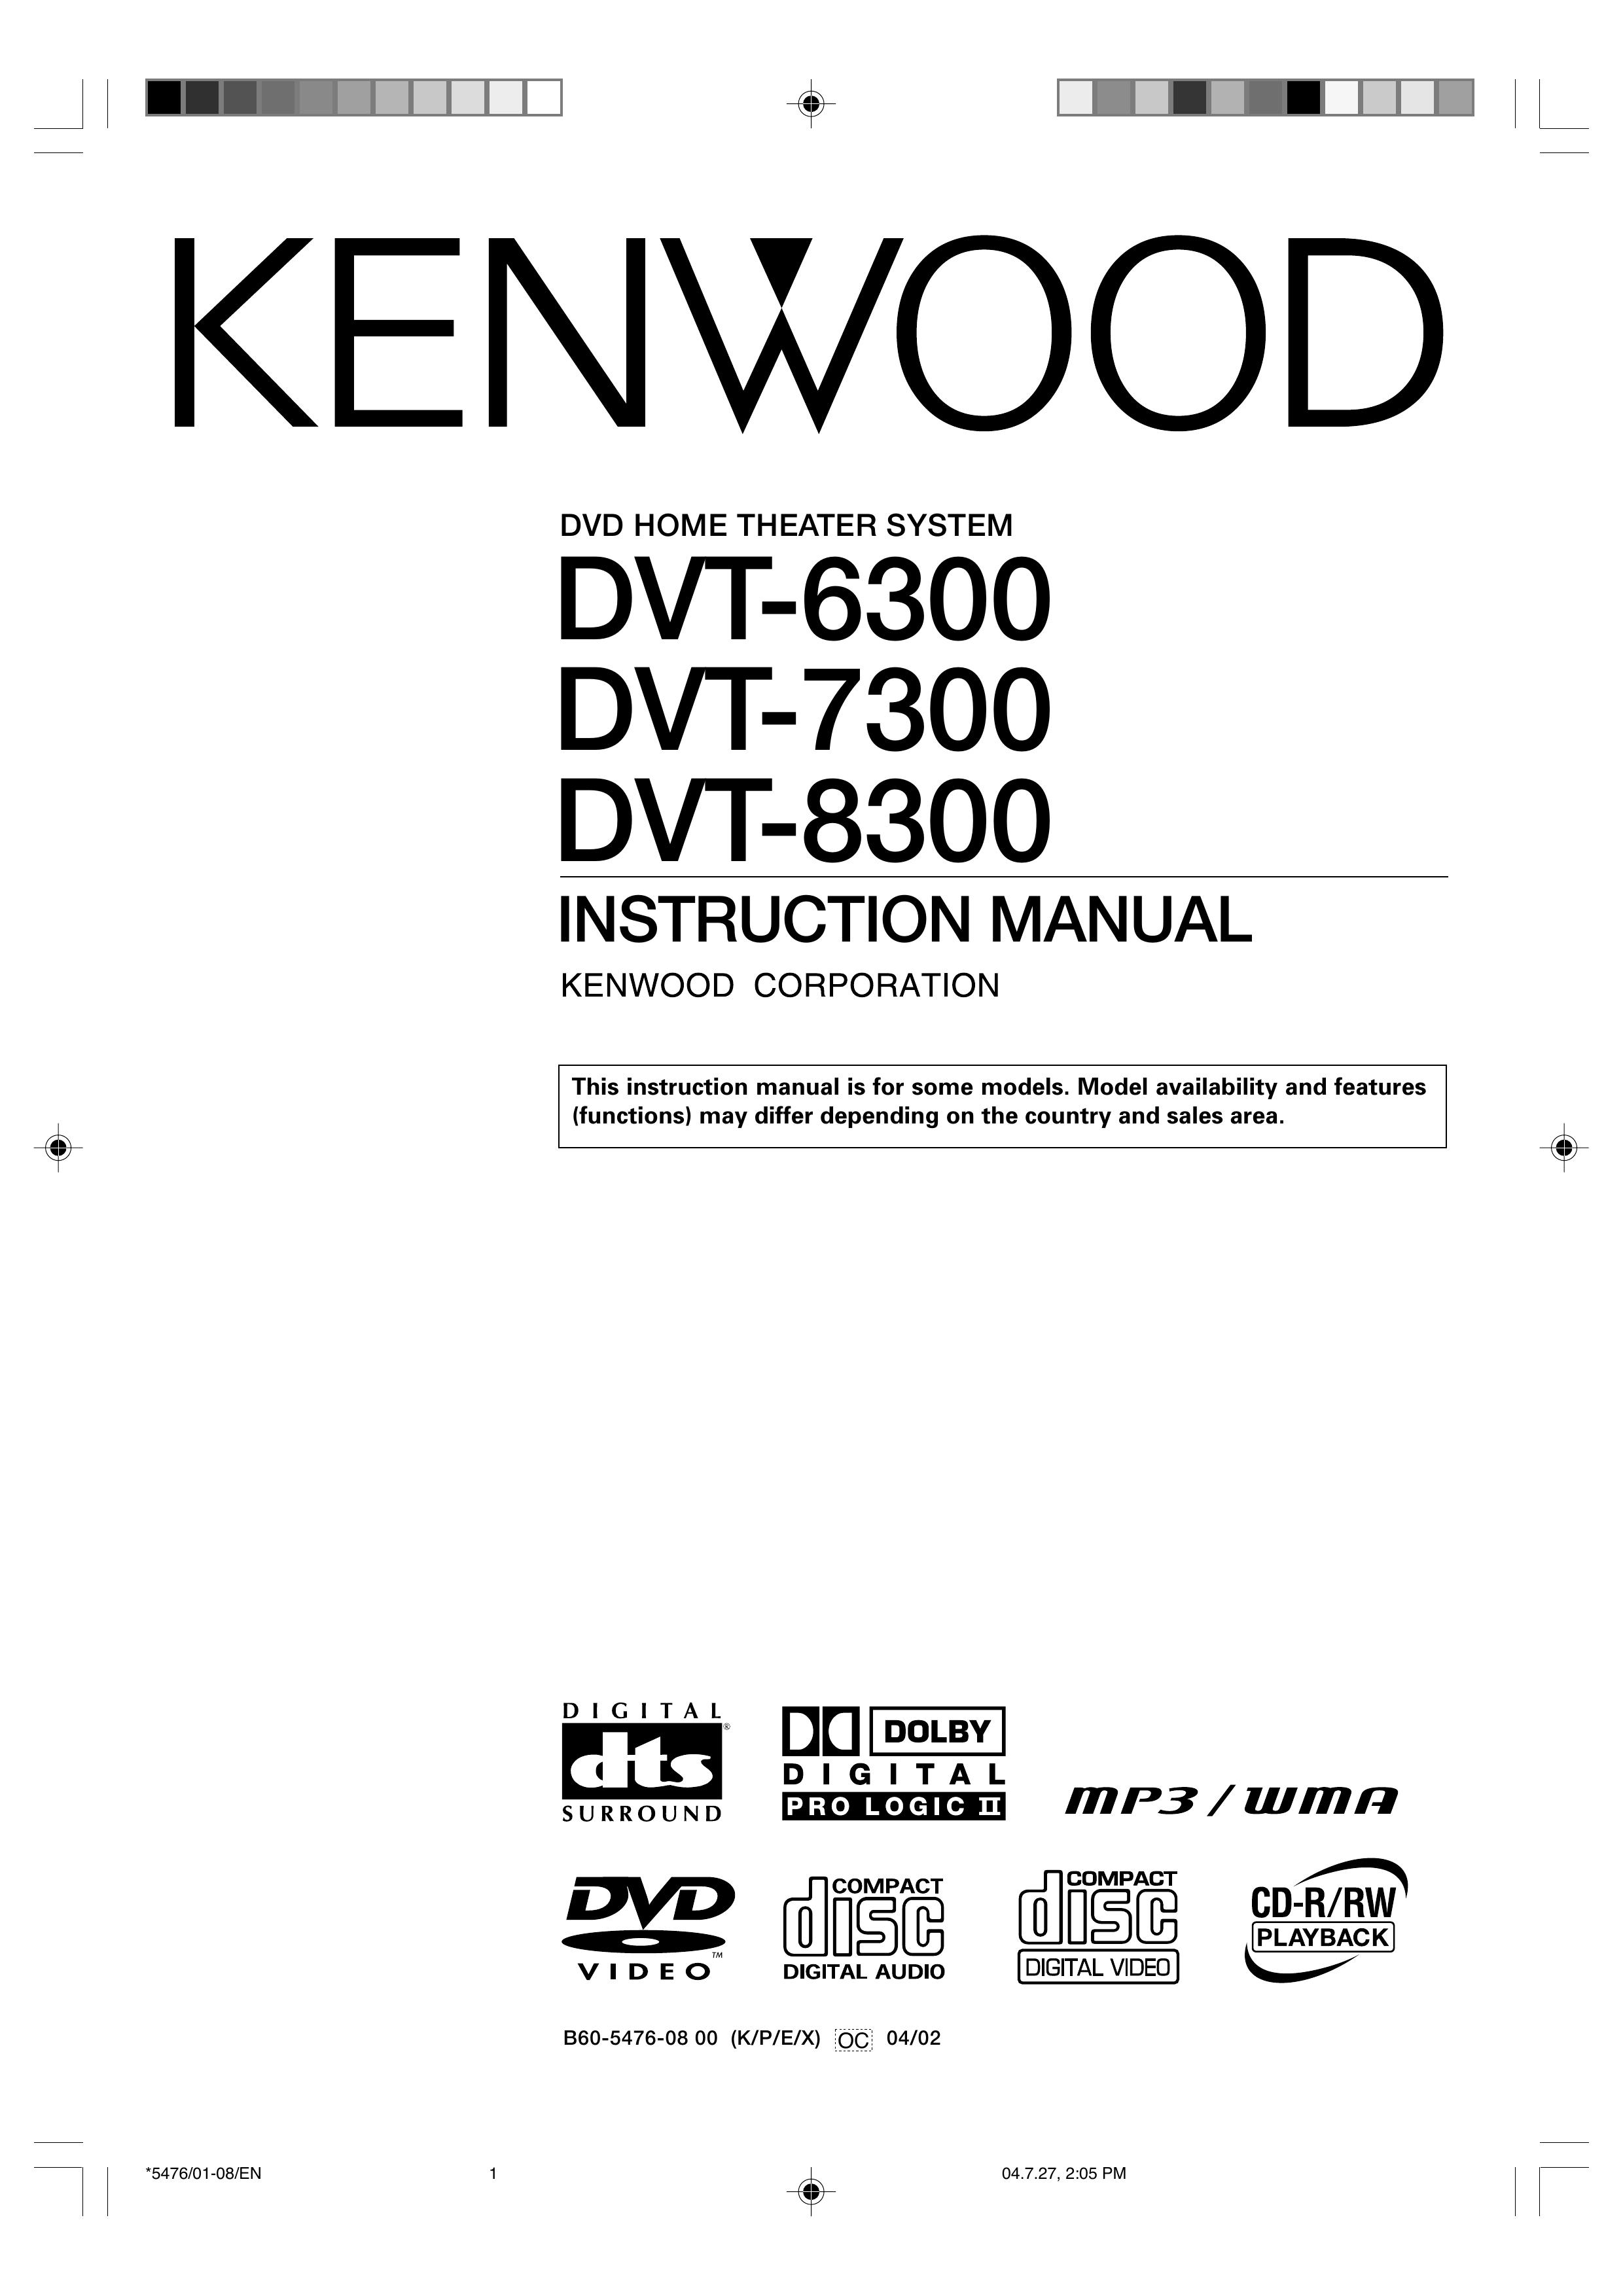 Kenwood DVT-7300 Digital Camera User Manual